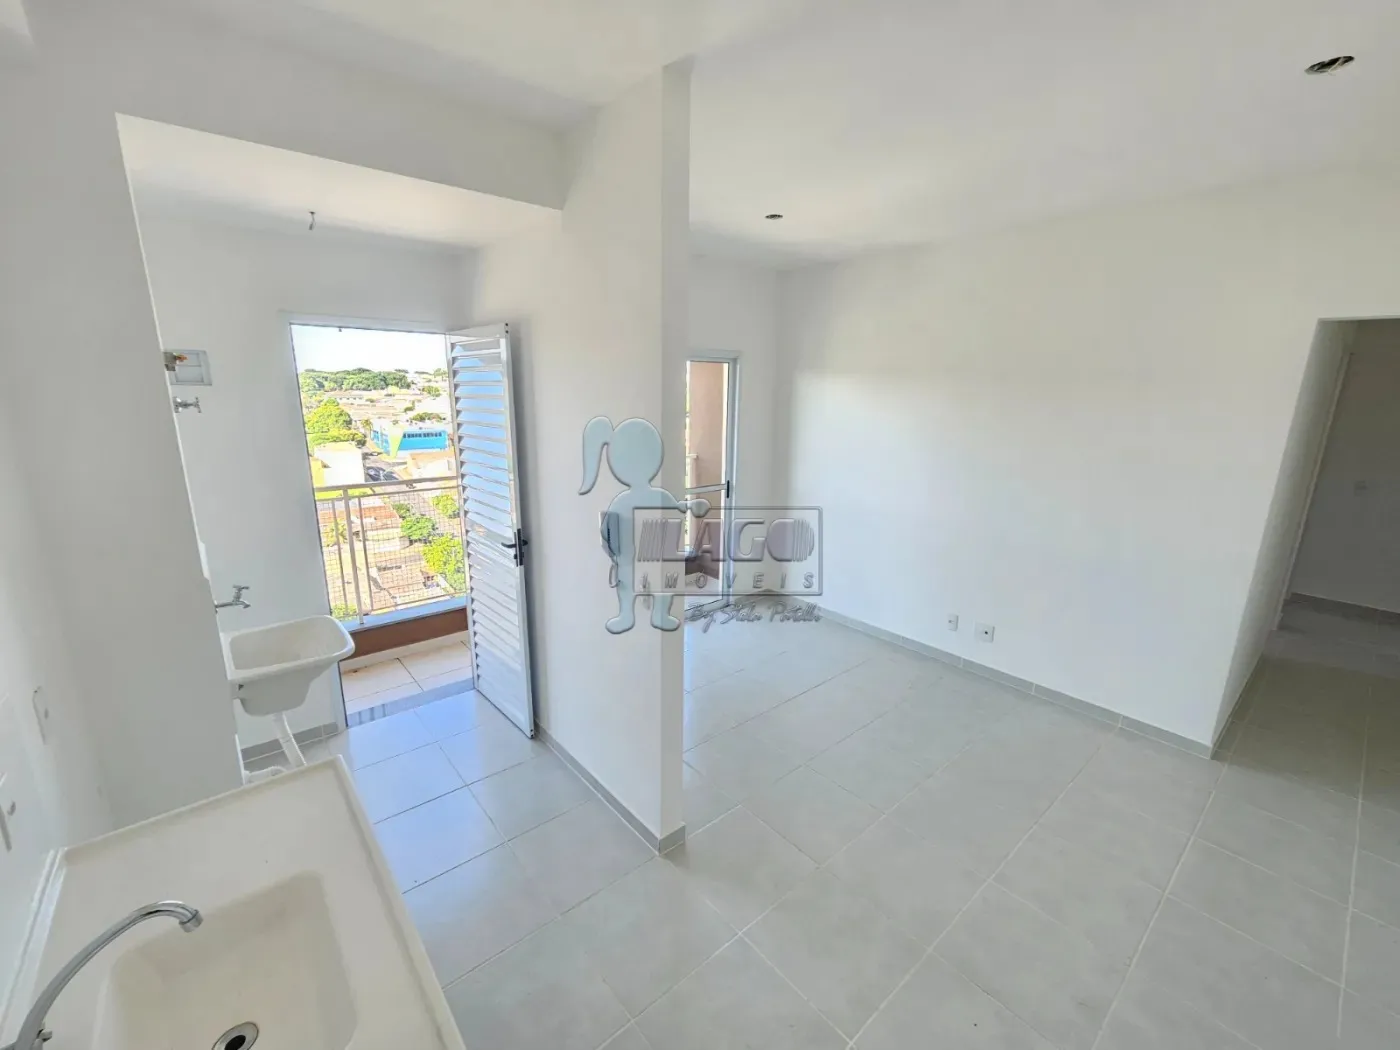 Comprar Apartamentos / Padrão em Ribeirão Preto R$ 275.923,33 - Foto 3